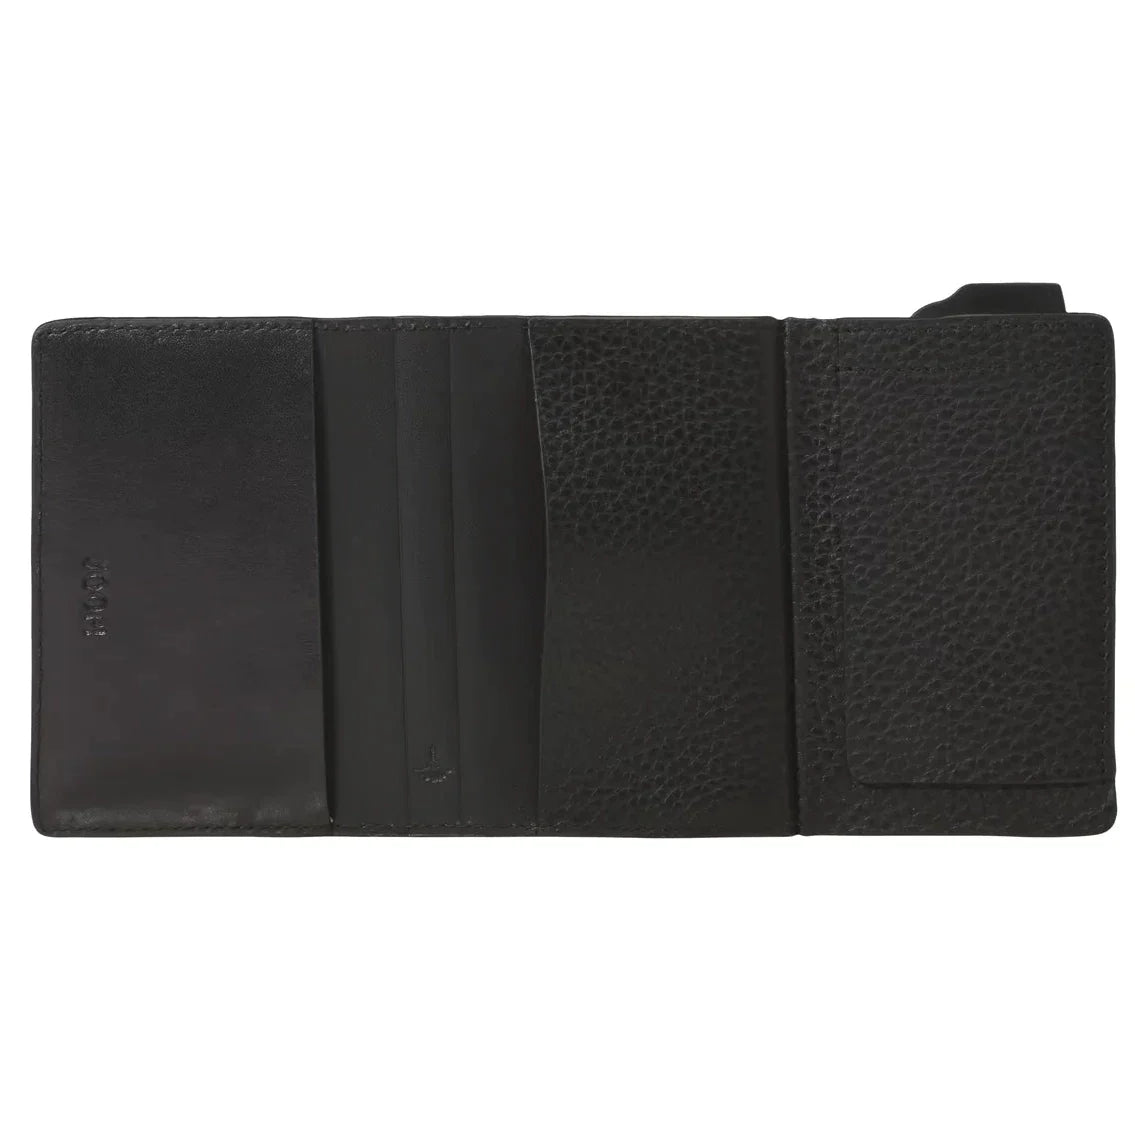 Joop Cardona C-One E-Cage SV8 wallet RFID 10 cm - Black